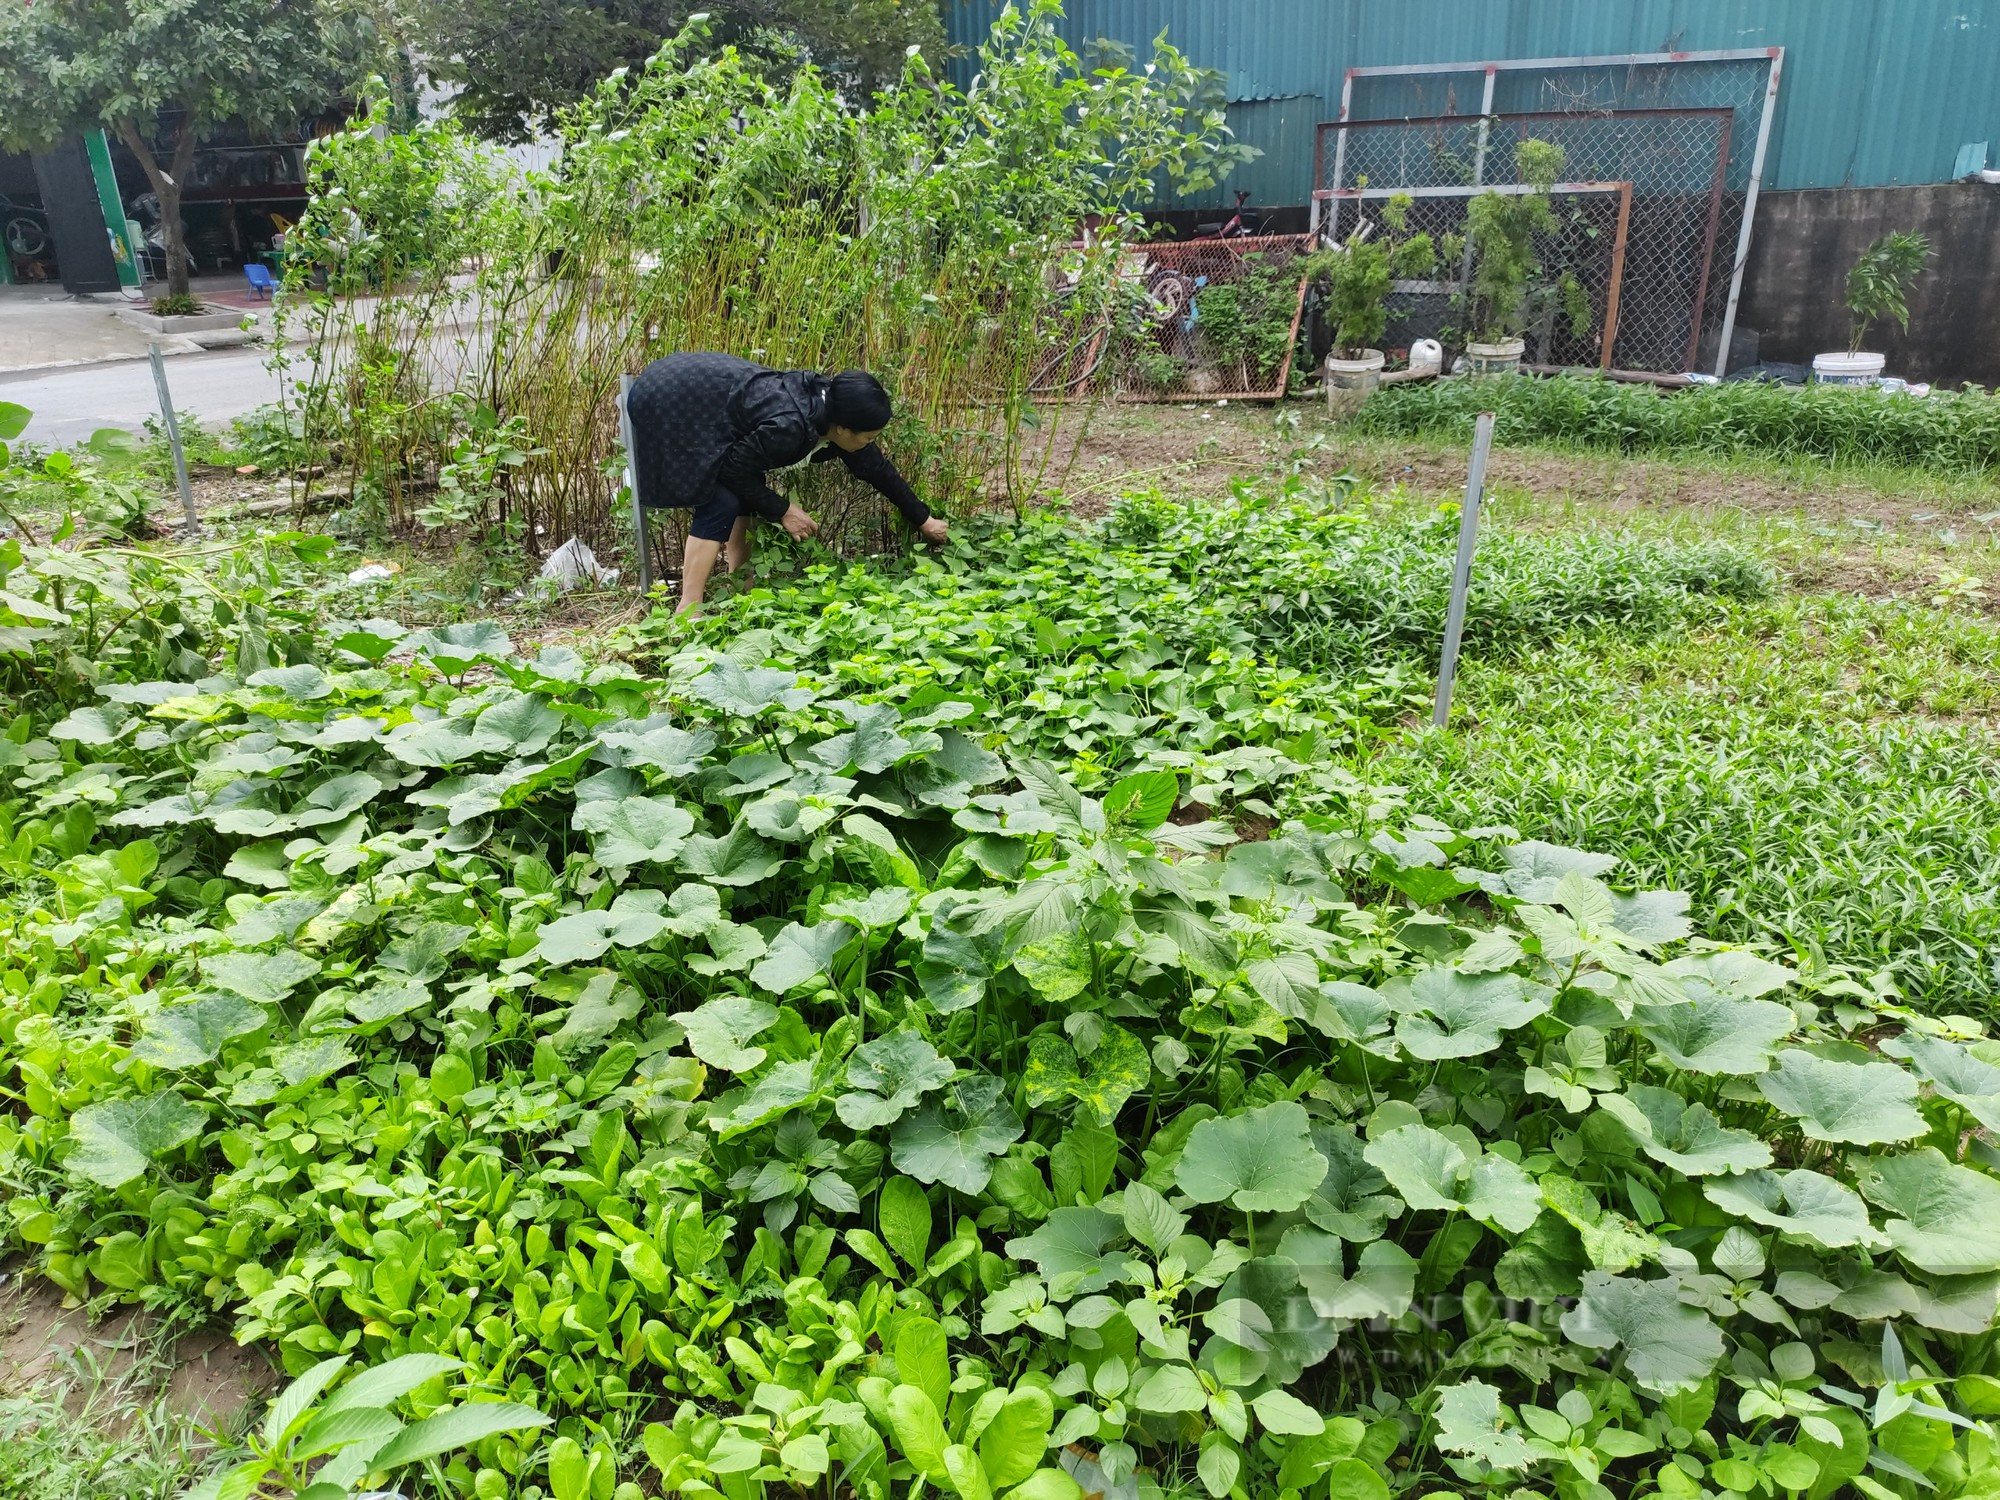 Sau phốt rau sạch rởm, dân chung cư ở Hà Nội phạt cỏ dại, khai hoang cuốc đất trồng rau - Ảnh 3.